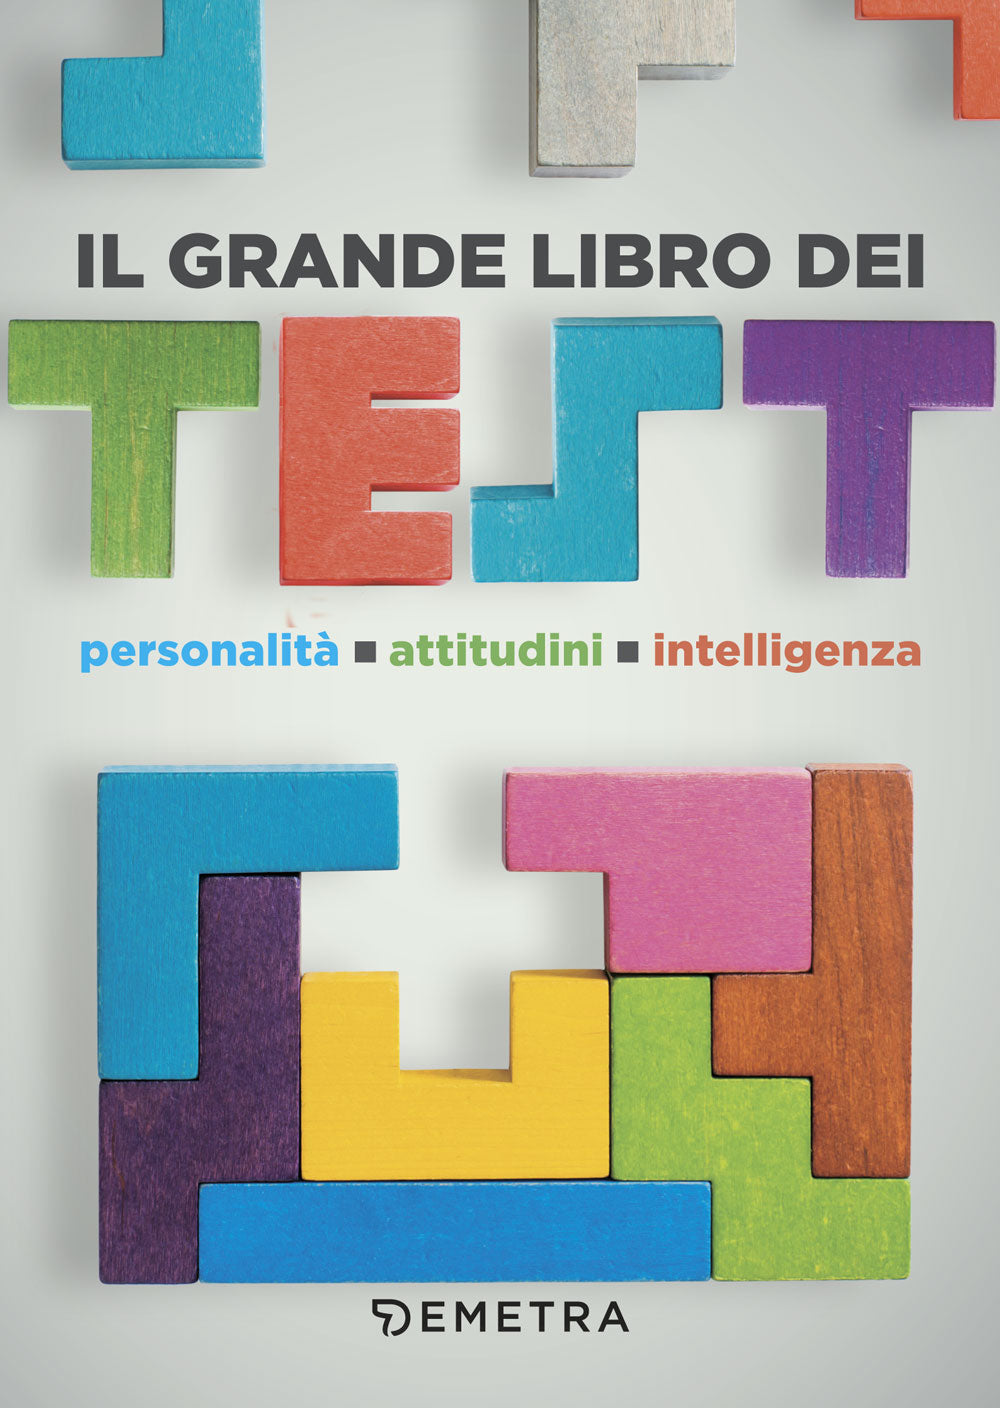 Il grande libro dei Test::Personalità - Attitudini - Intelligenza